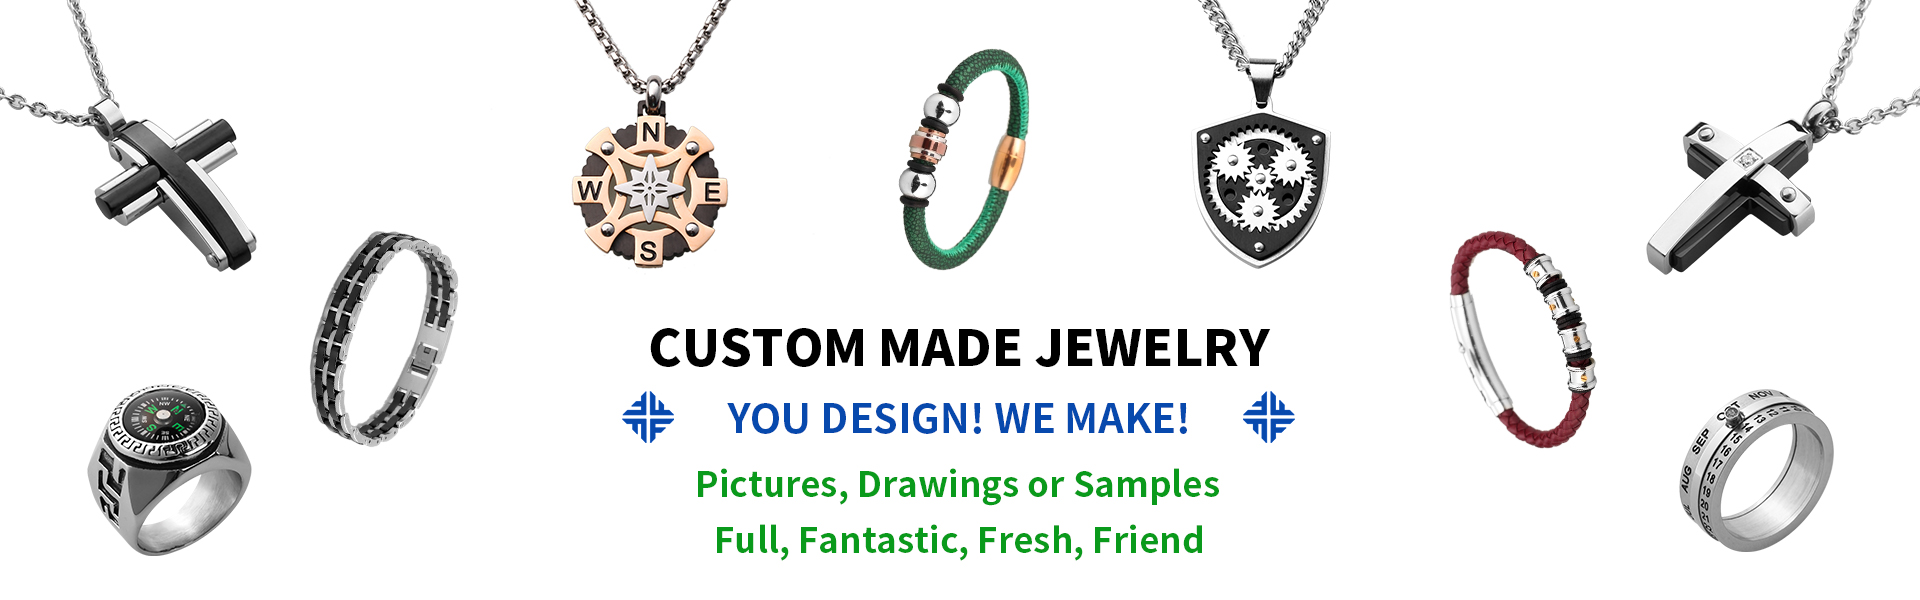 rozsdamentes acélból készült ékszerek, divatékszerek és kiegészítők, ékszer nagykereskedők és gyártók,Dongguan Fullten Jewelry Co., Ltd